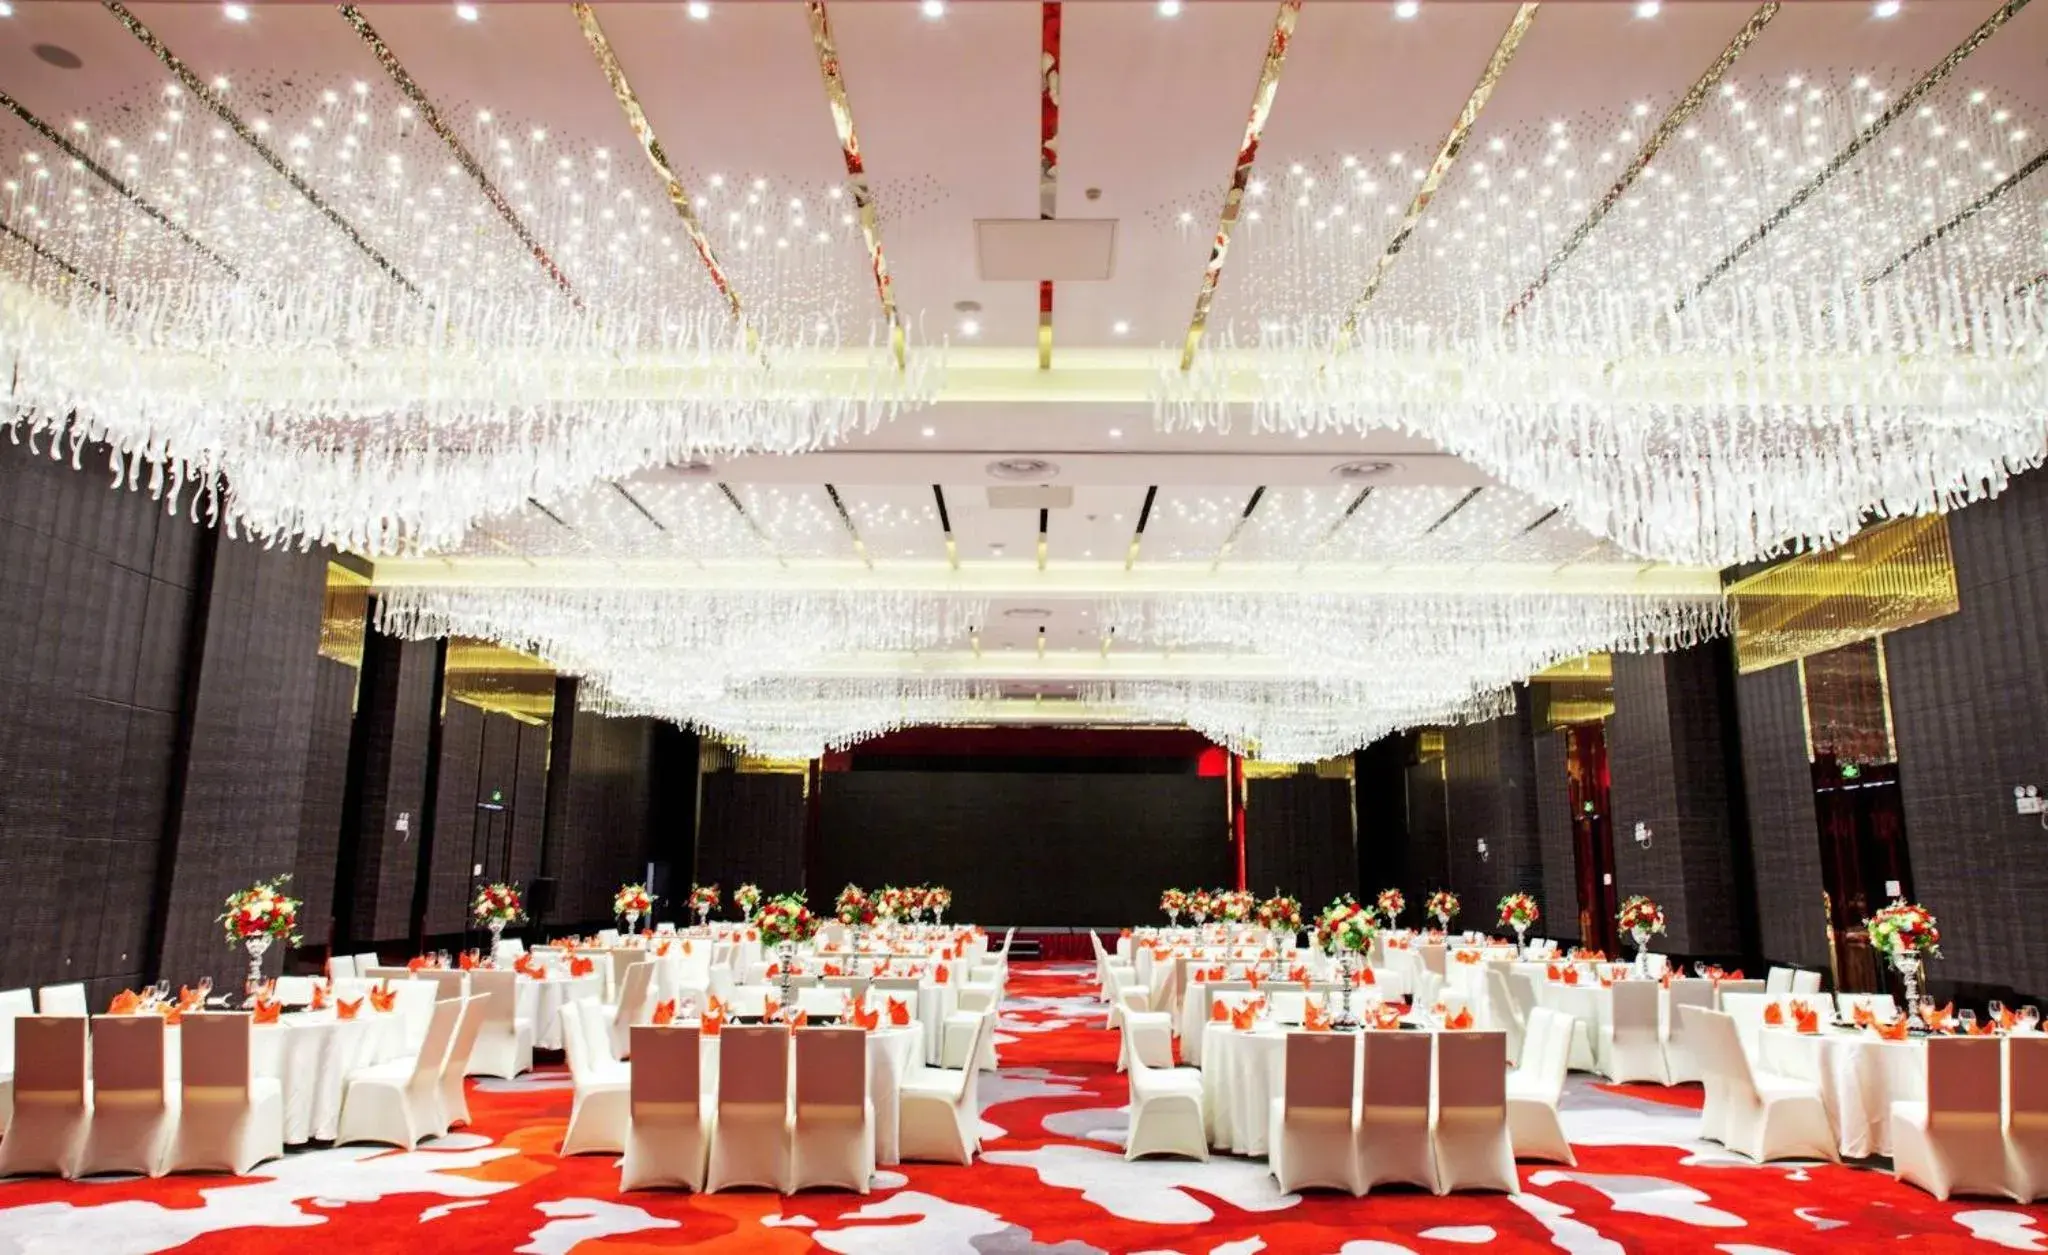 Banquet/Function facilities, Banquet Facilities in Holiday Inn - Shanghai Jinshan, an IHG Hotel